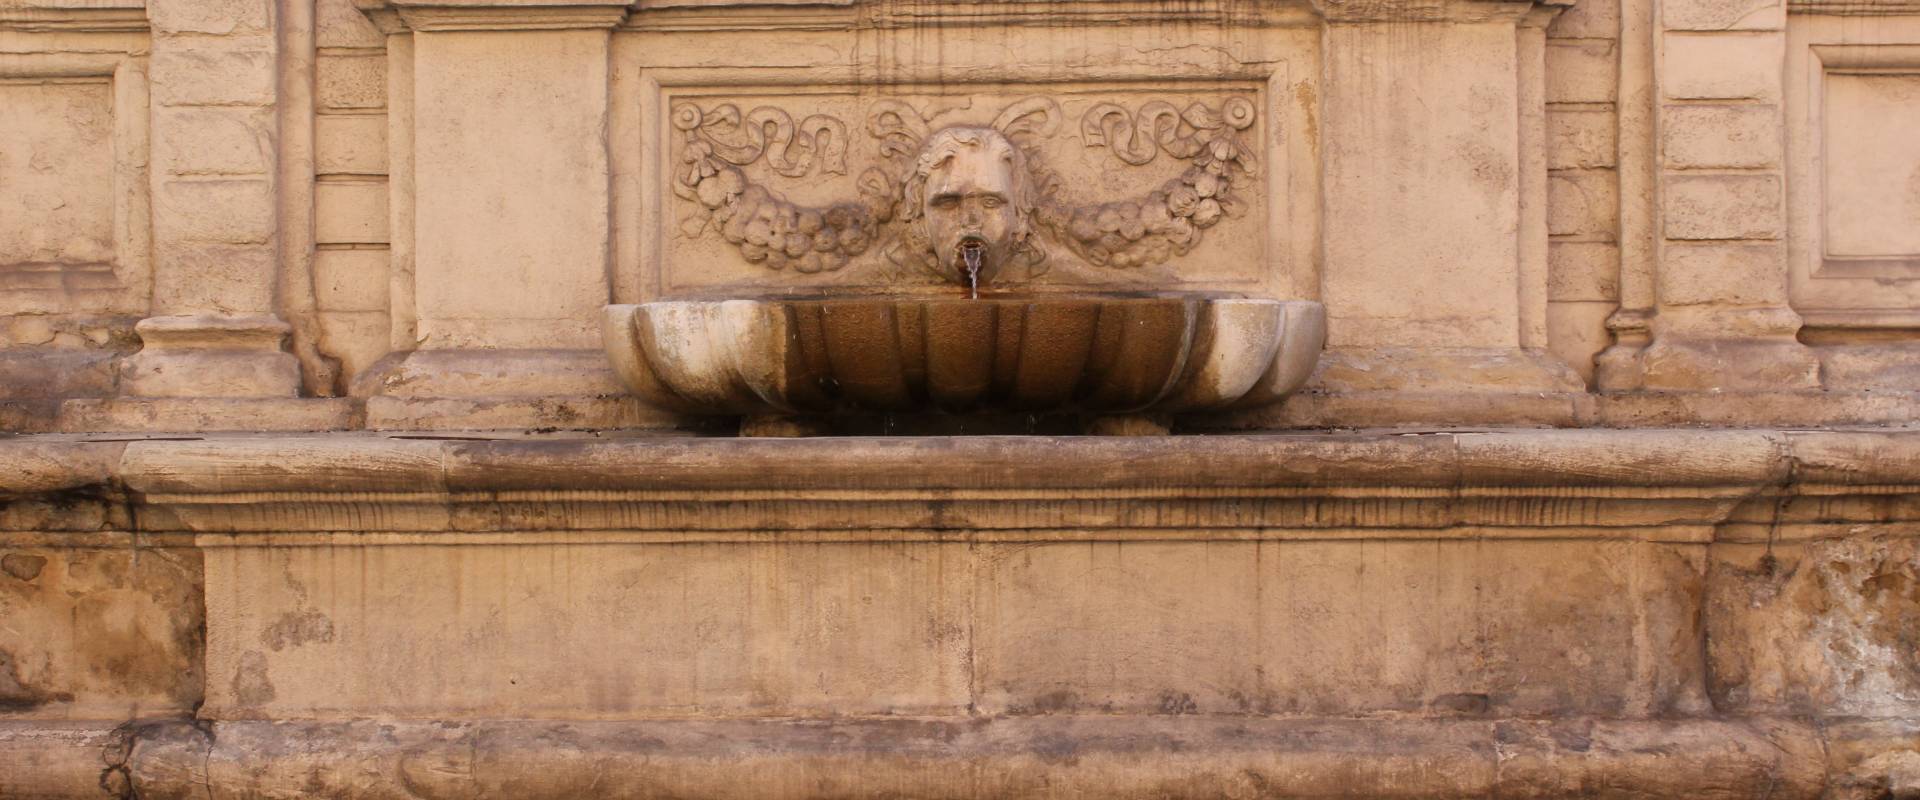 Fontana via Ugo bassi foto di Iacopobastia